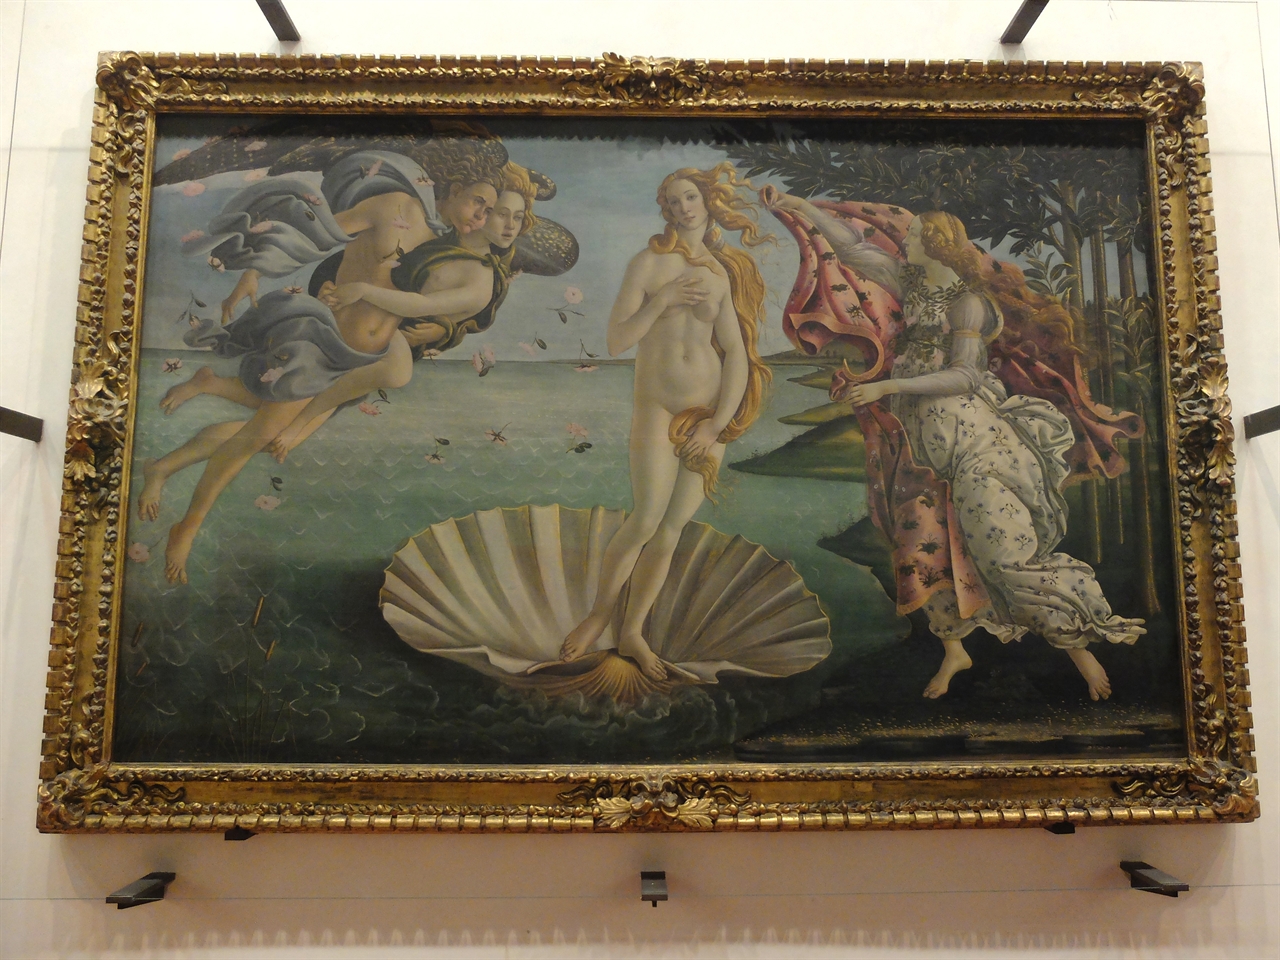 보티첼리, '비너스의 탄생', 피렌체 우피치 미술관. 서풍 제피로스의 입김에 의해 사이프러스 해안으로 밀려온 비너스. 꽃의 여신 플로라가 그녀를 맞이하고 있습니다. 신플라톤주의라는 조금은 어려운 사상에 바탕을 둔 르네상스 미술의 가장 아름다운 명작입니다.